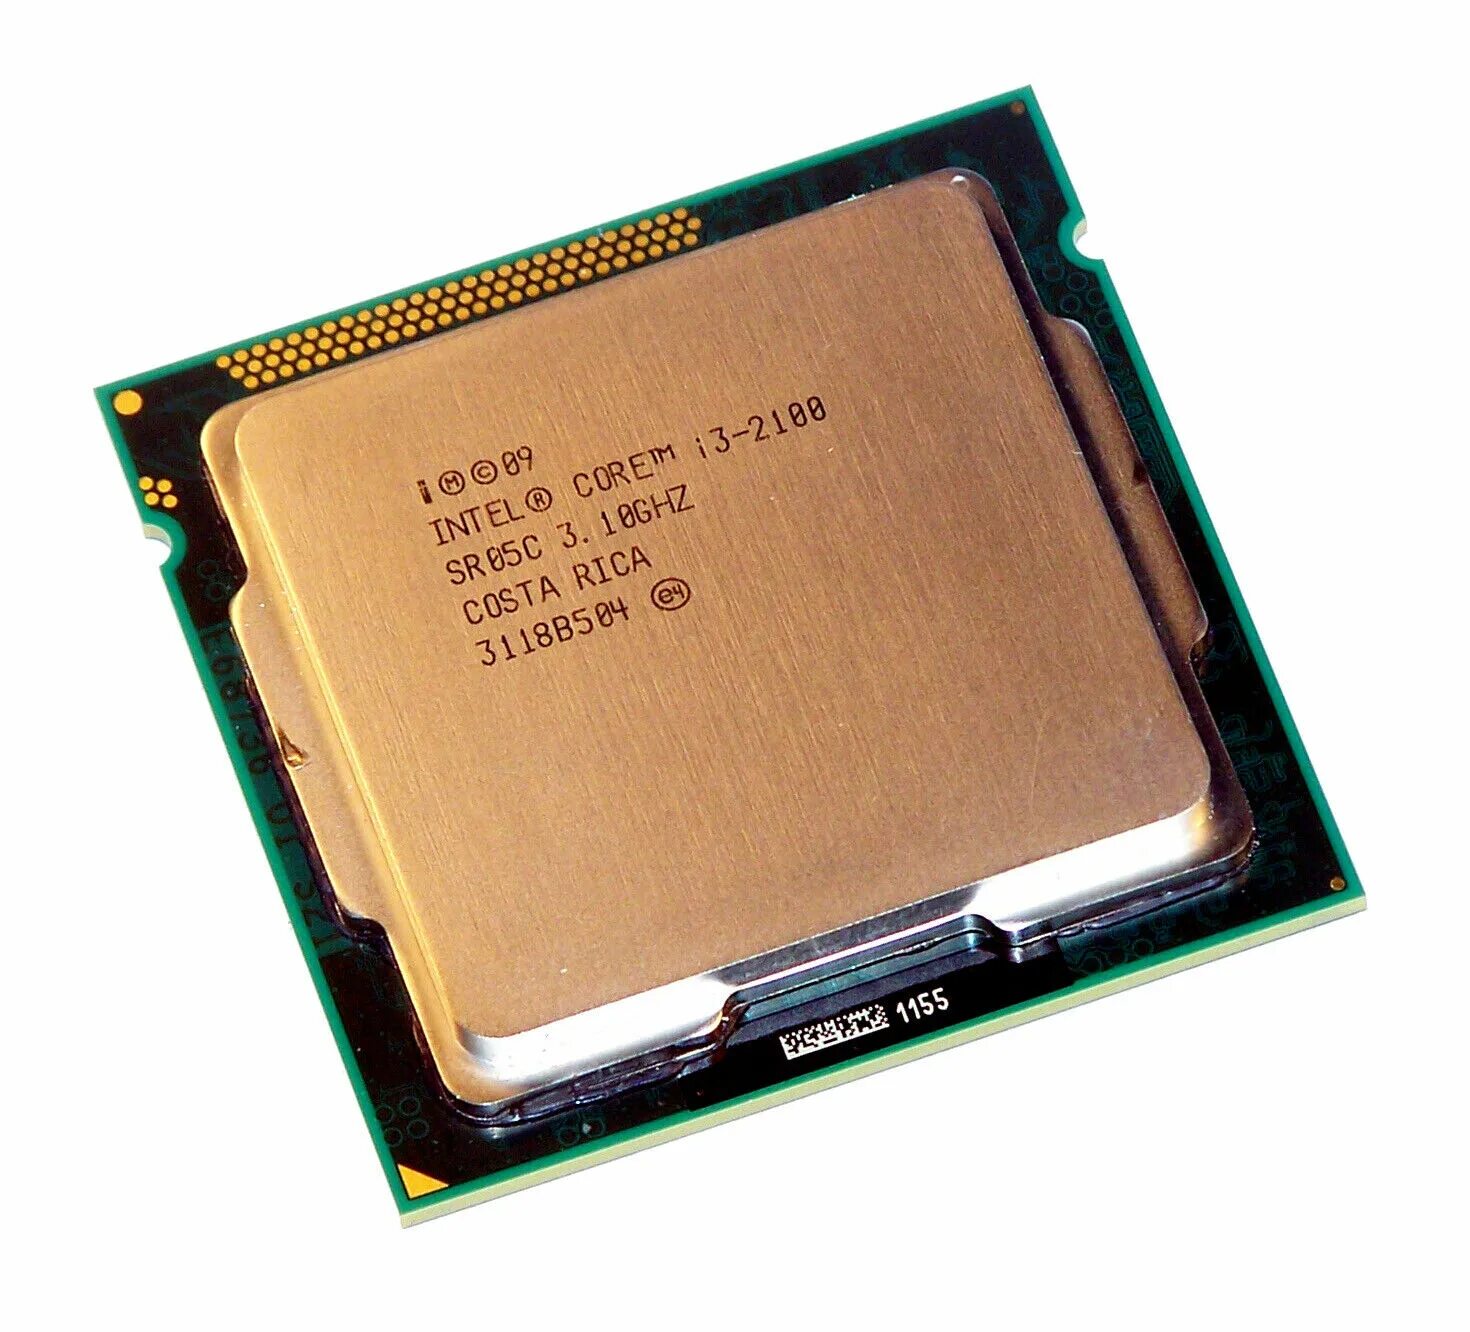 Core i5 1335u 1.3 ггц. Процессор Intel Core i3 1155. Процессор Intel Core i3 2100. Intel Core i3-2100 Sandy Bridge lga1155, 2 x 3100 МГЦ. Процессор Intel Core i3-2100 сокет.